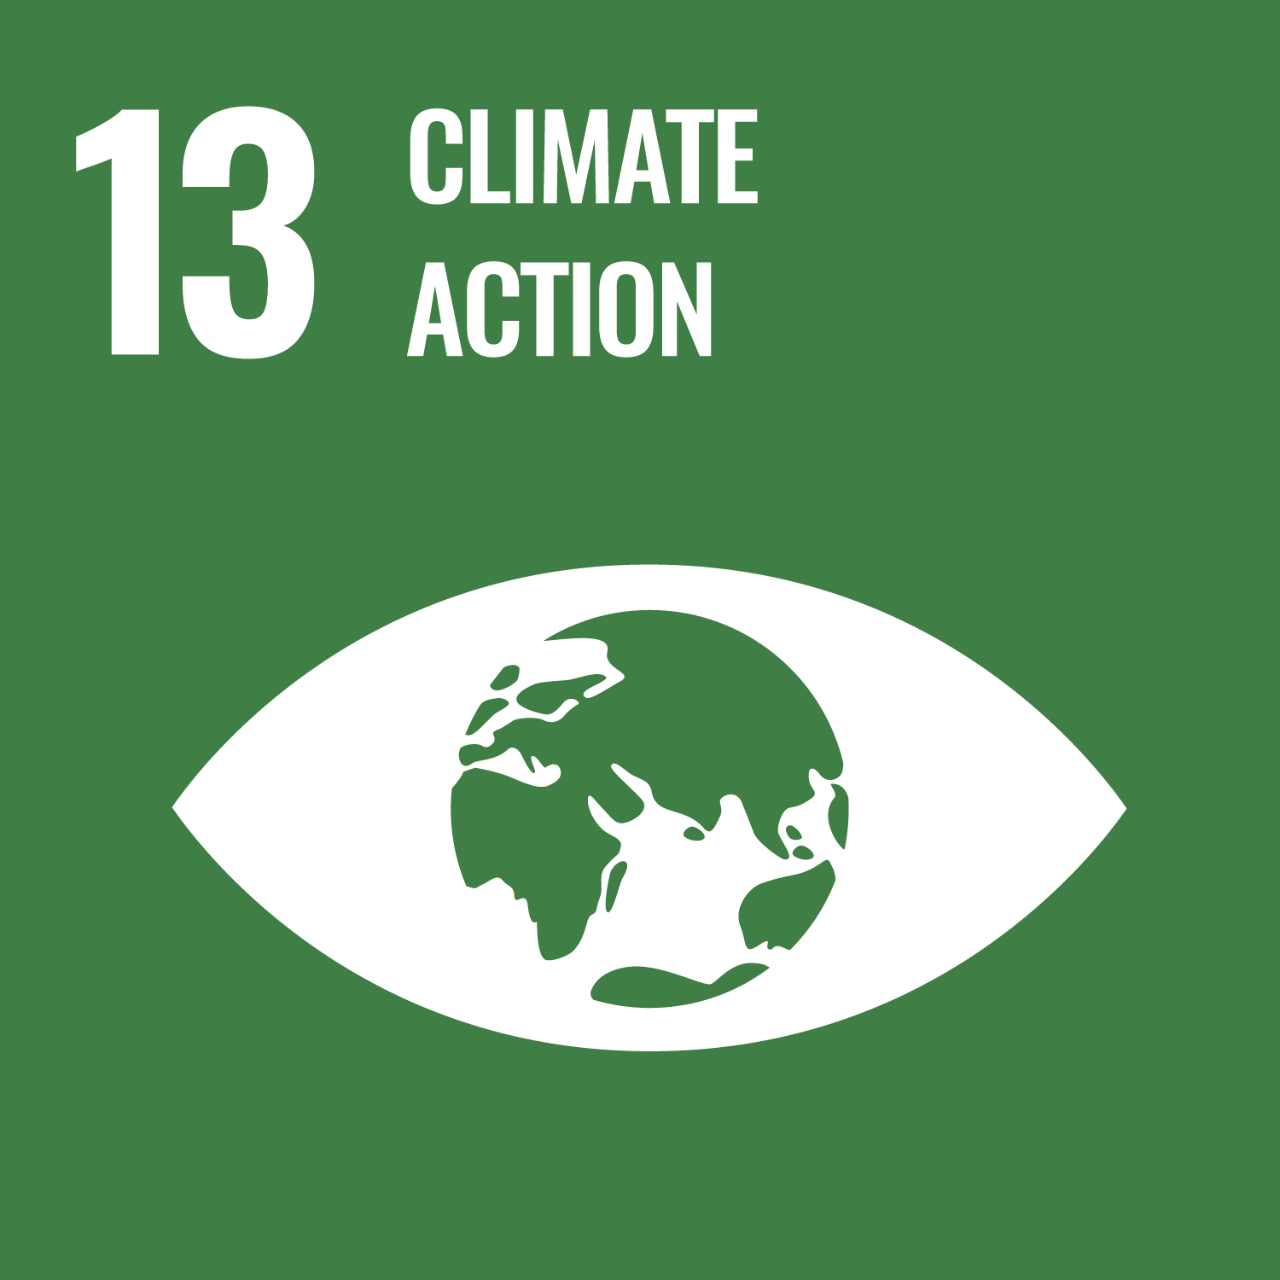 Het Sustainable Development Goal 13 heeft tot doel dringend actie te ondernemen om de klimaatverandering en de gevolgen ervan te bestrijden.